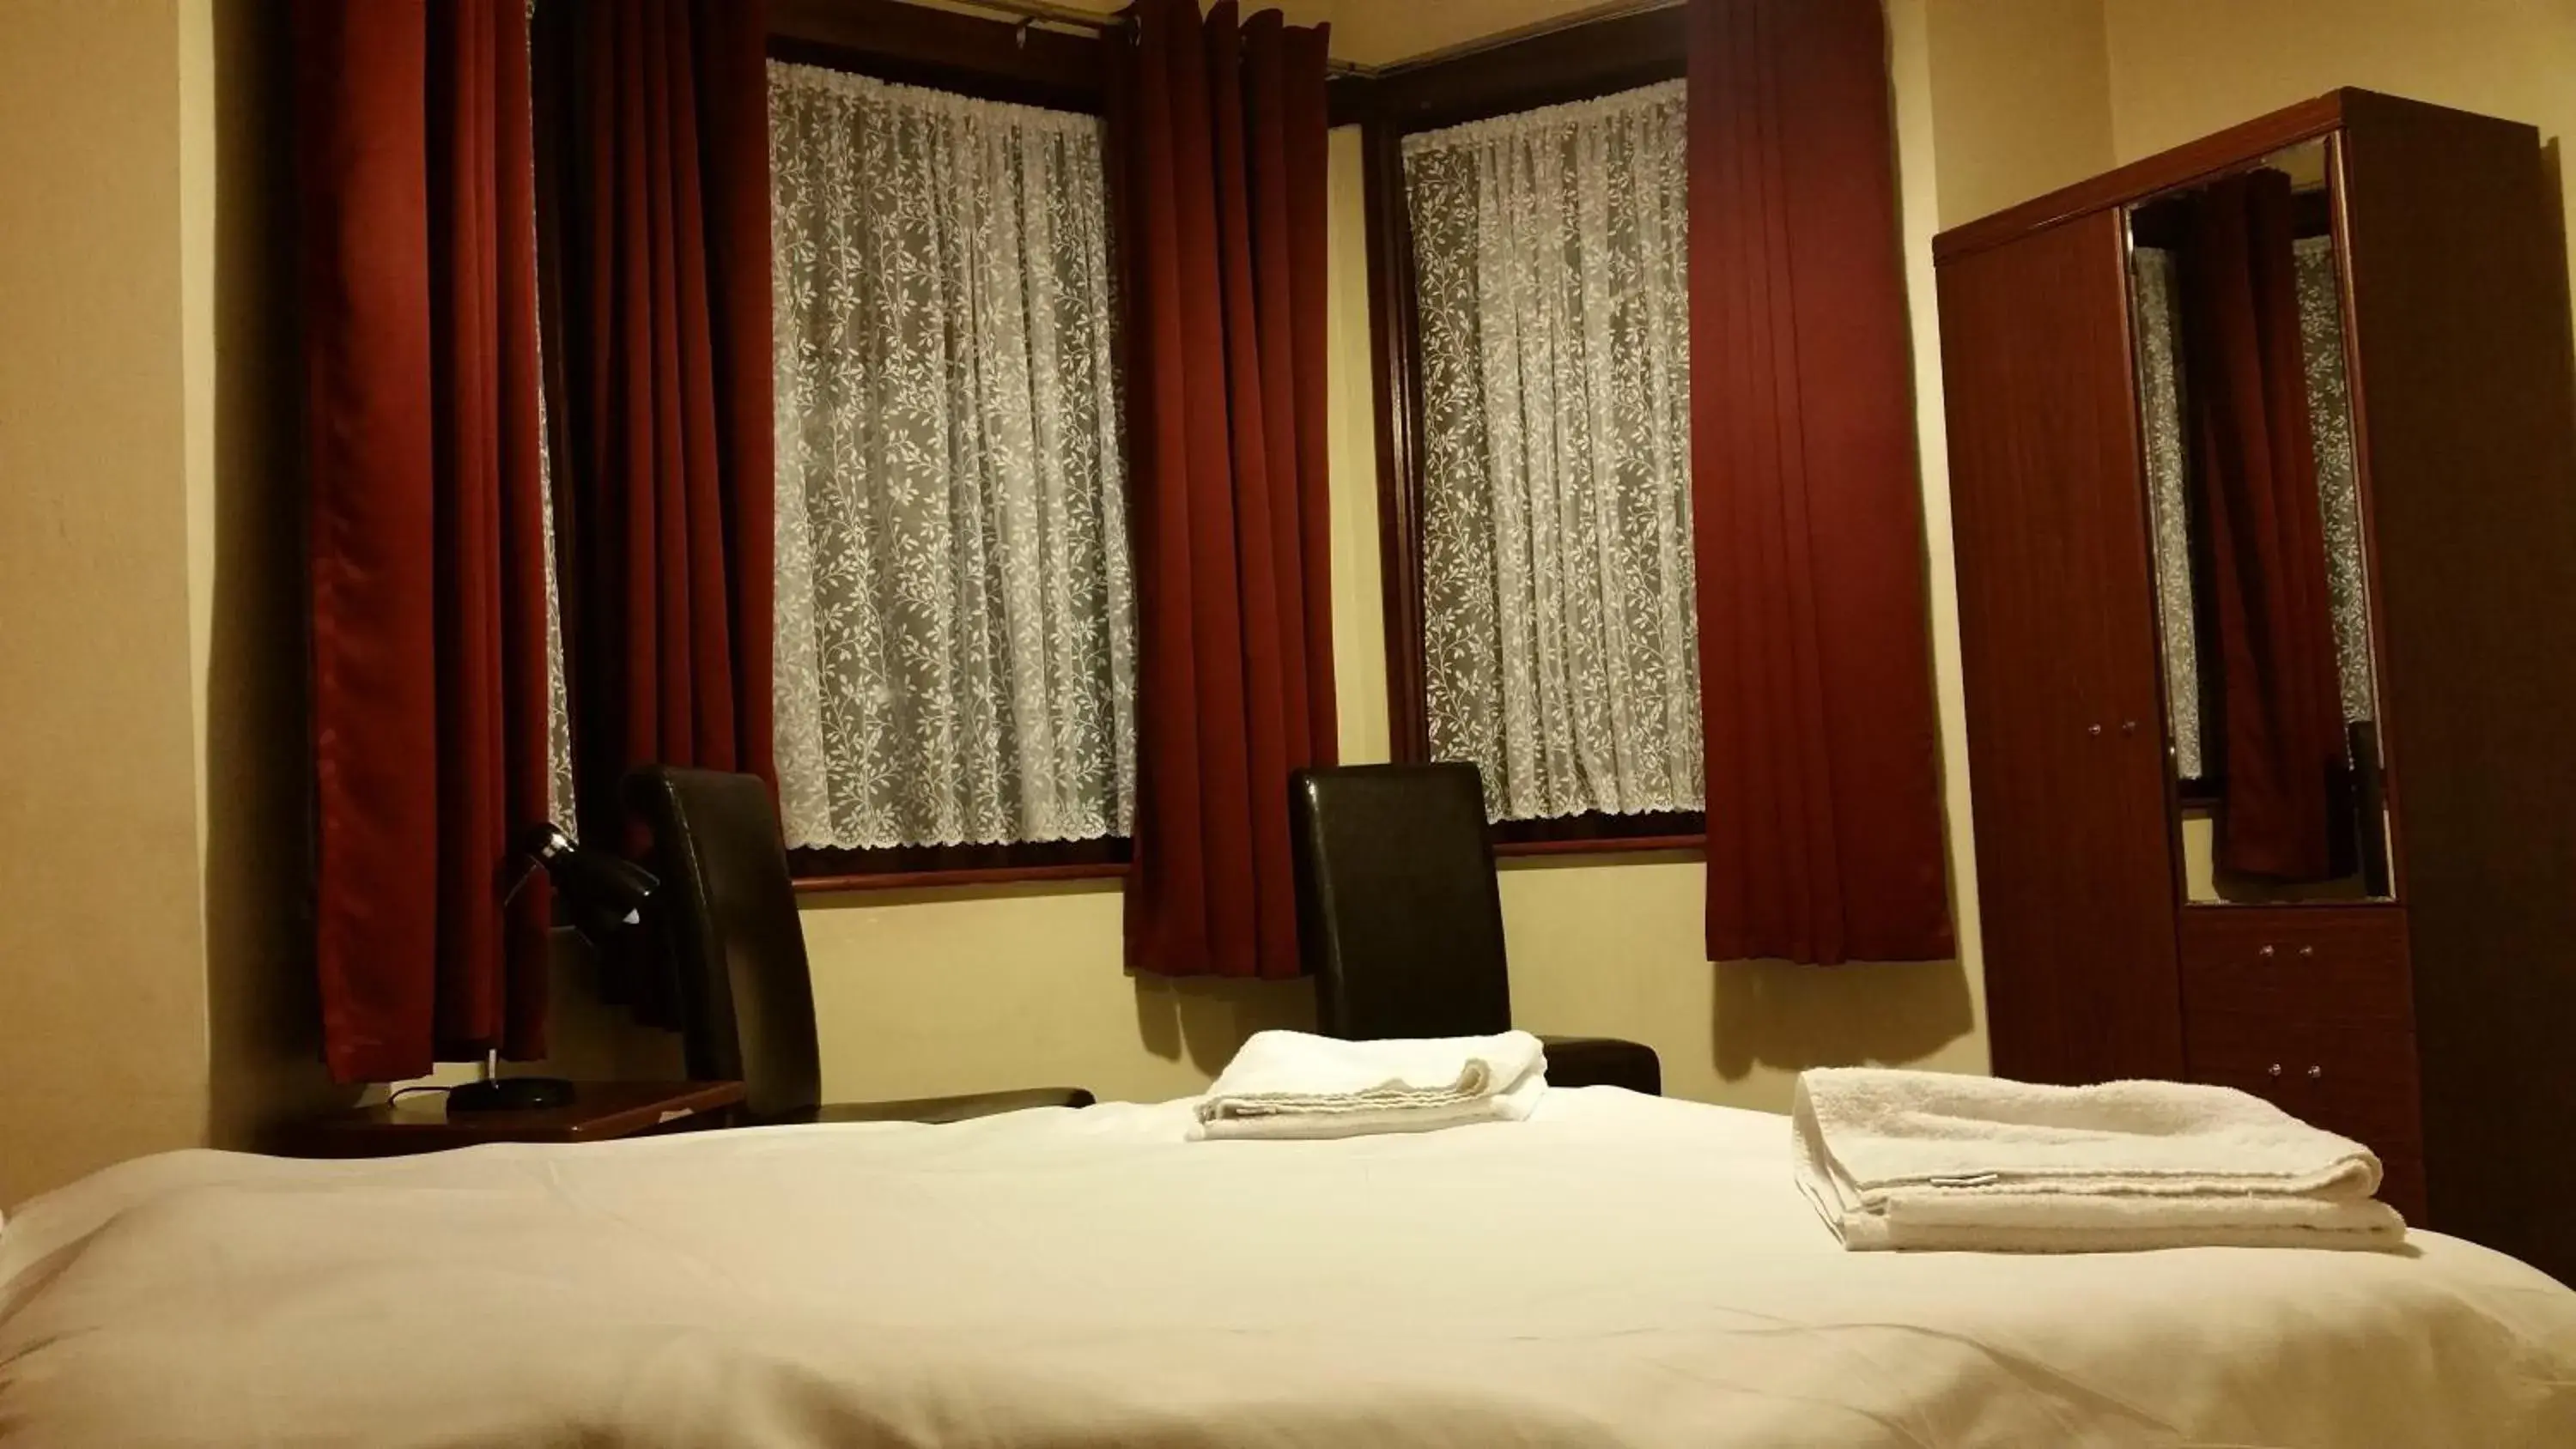 Bed in Best Inn Hotel